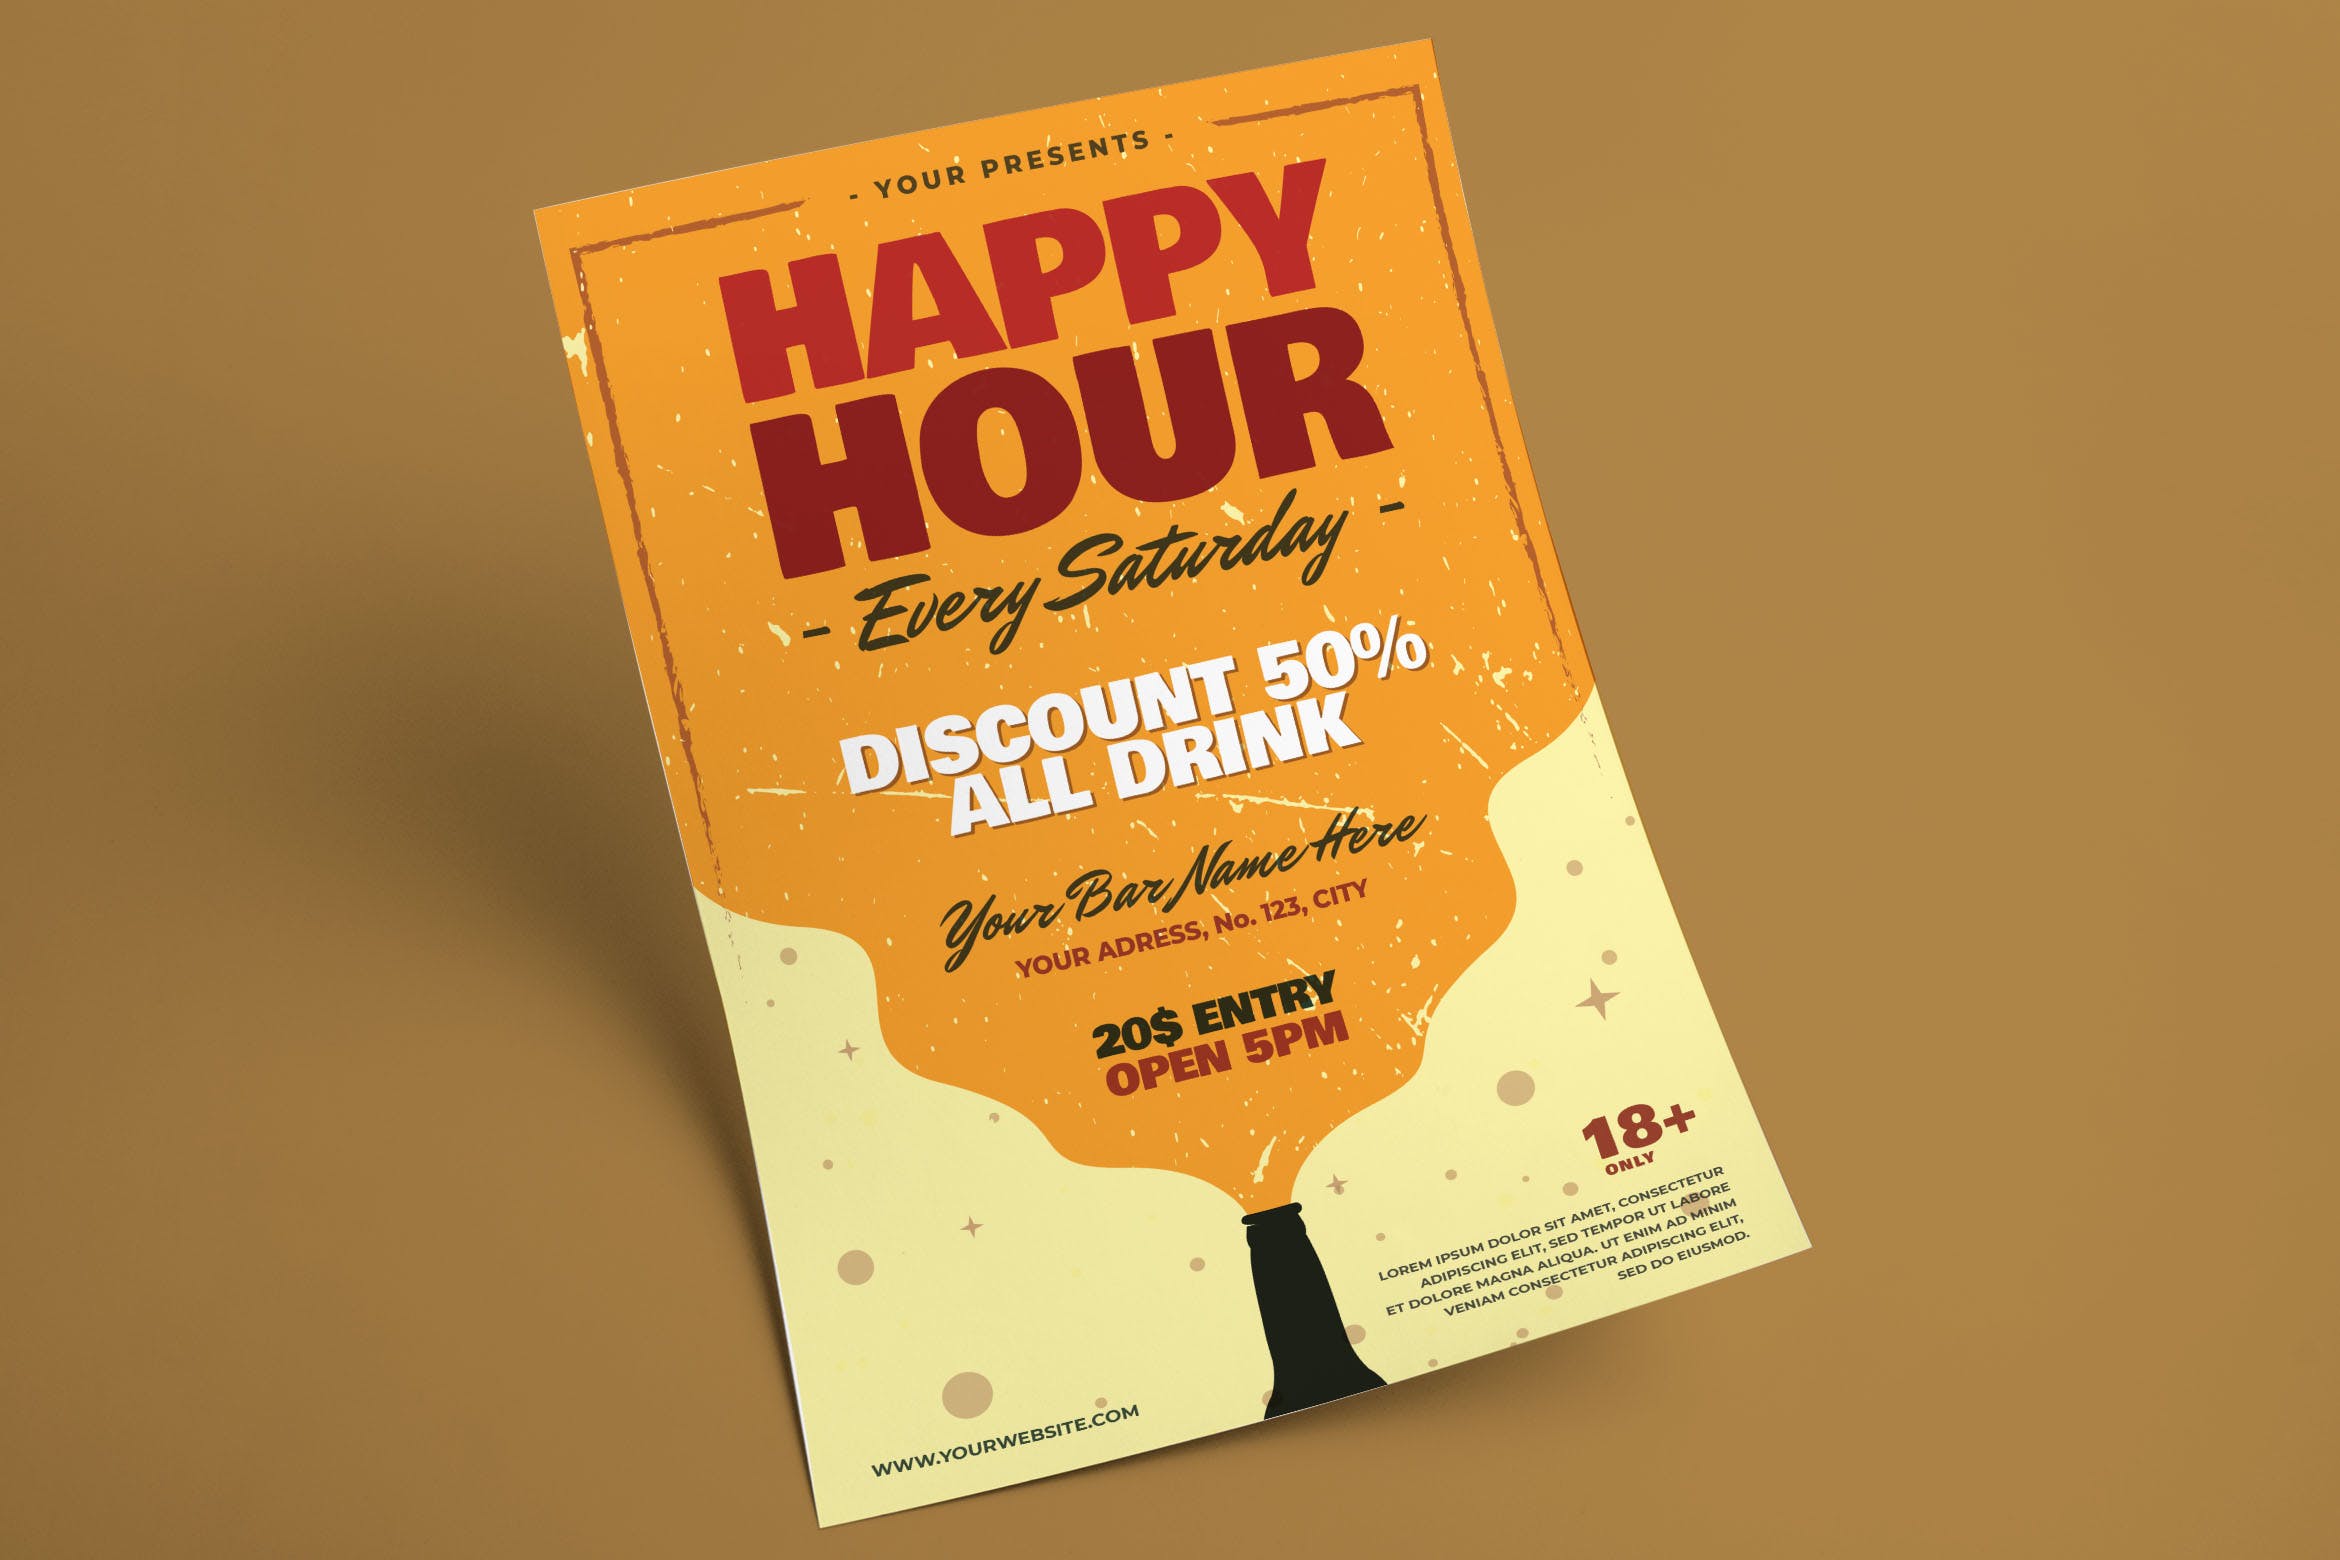 欢乐时光休闲酒吧活动海报传单设计模板 Happy Hour Flyer插图